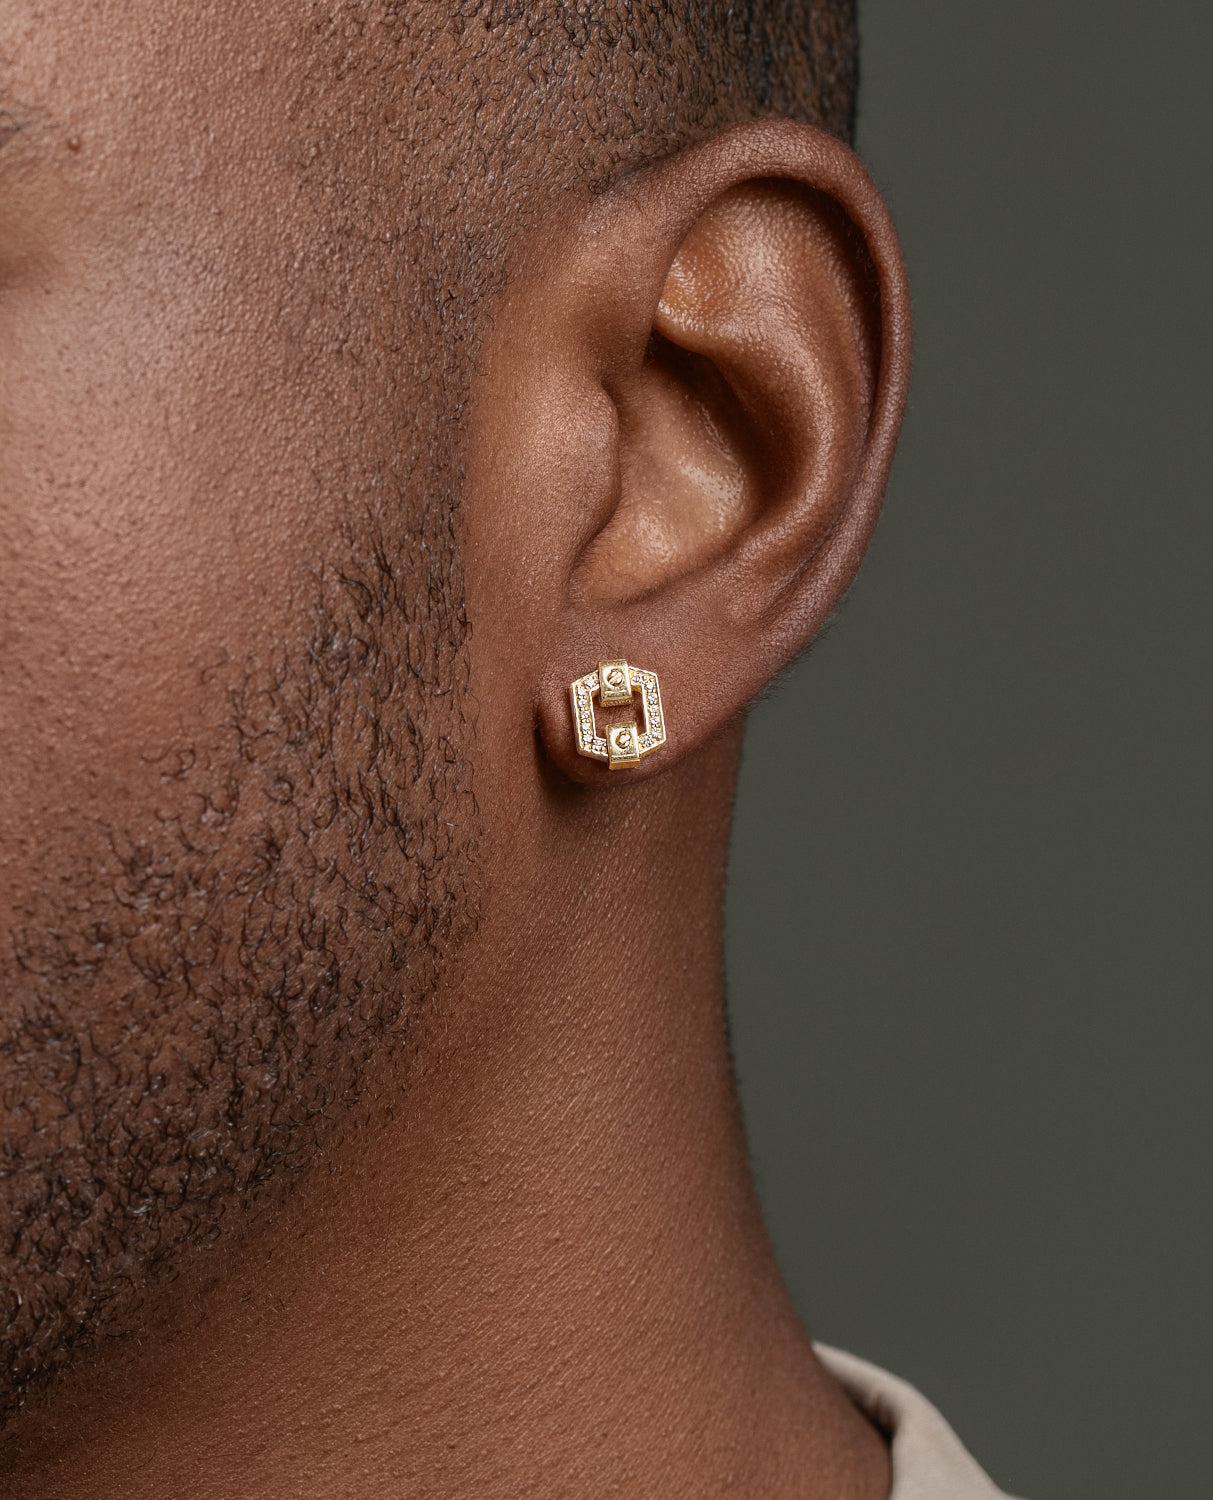 Ikonischer NORTHSTAR Gold-Ohrstecker mit 0,09ct Diamanten. Die Rockford-Ohrstecker sind mit weißen Diamanten in Gold erhältlich. Versandfertige Ohrringe sind vorproduzierte, ungetragene Stücke. Diese Ohrringe haben eine kurze Bearbeitungszeit von